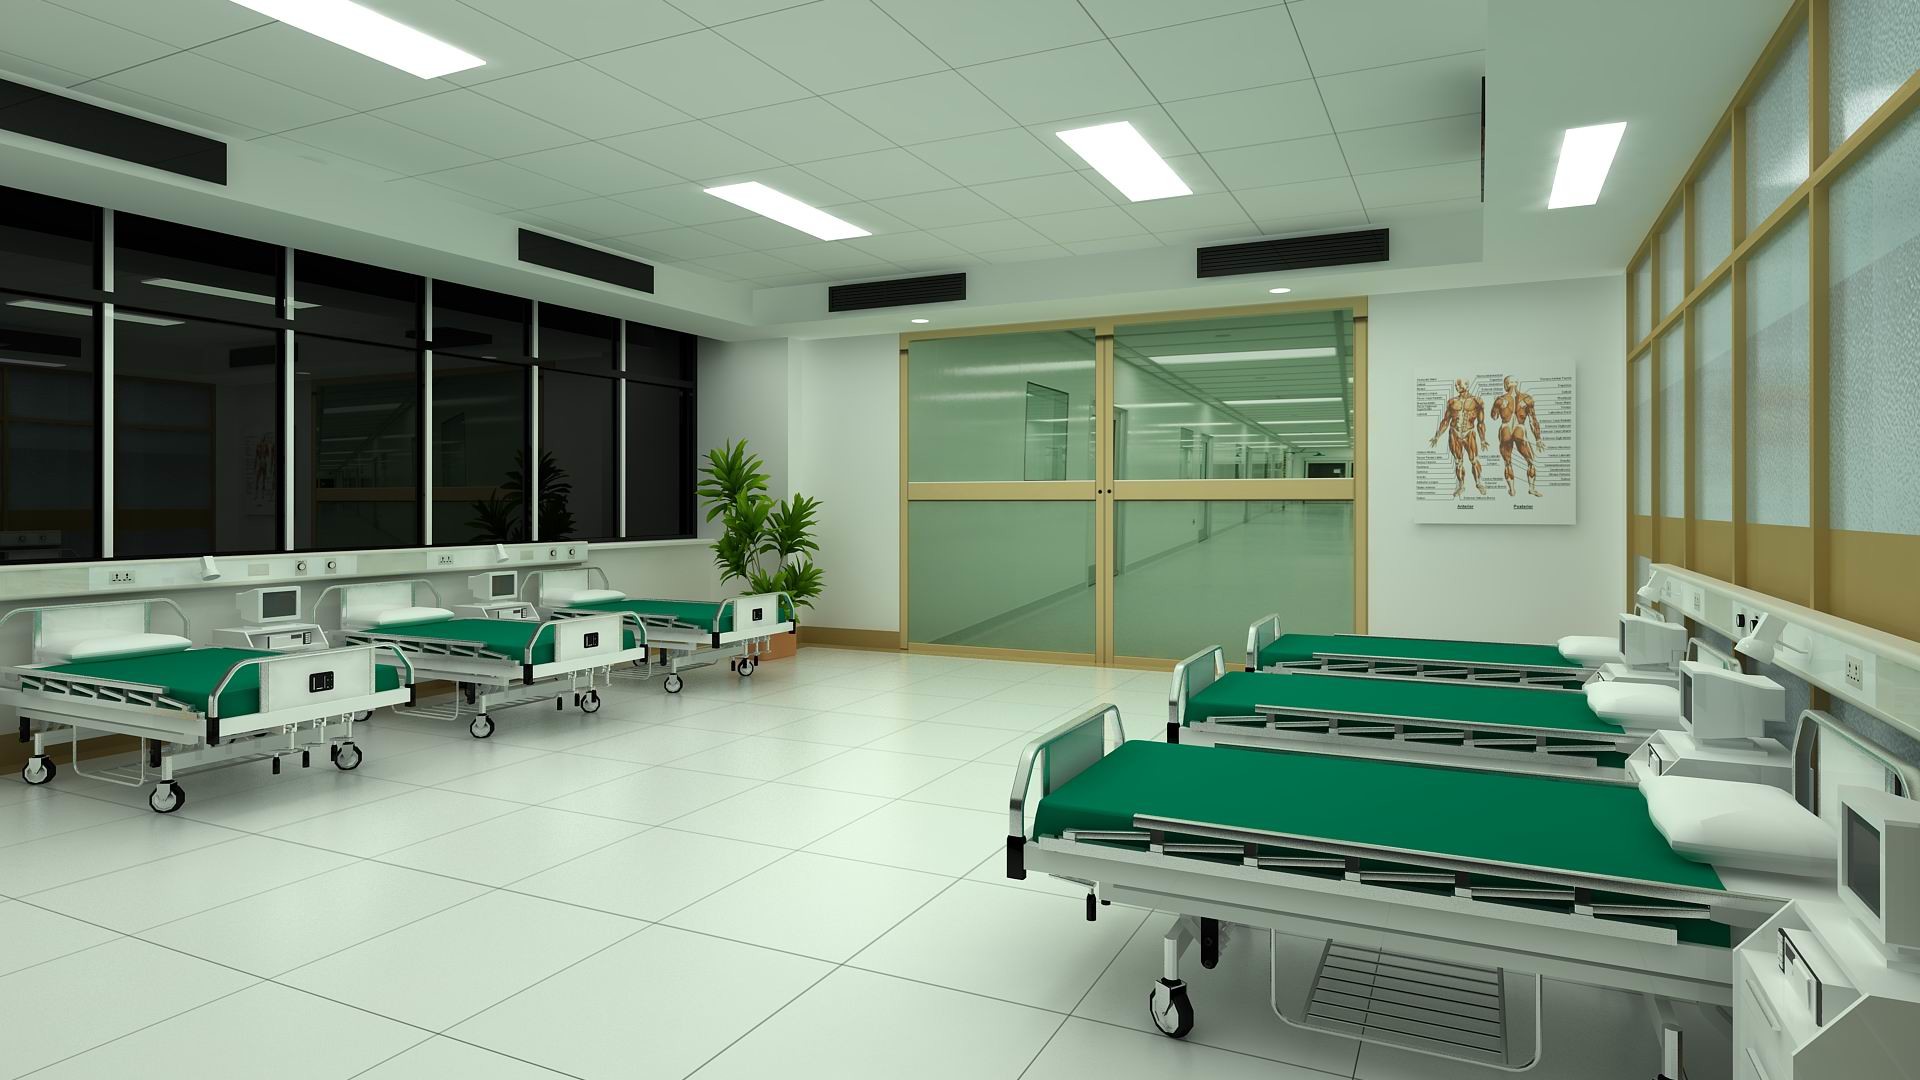 1920x1080 ... hospital room - 3D and 2D Art - ShareCG ...